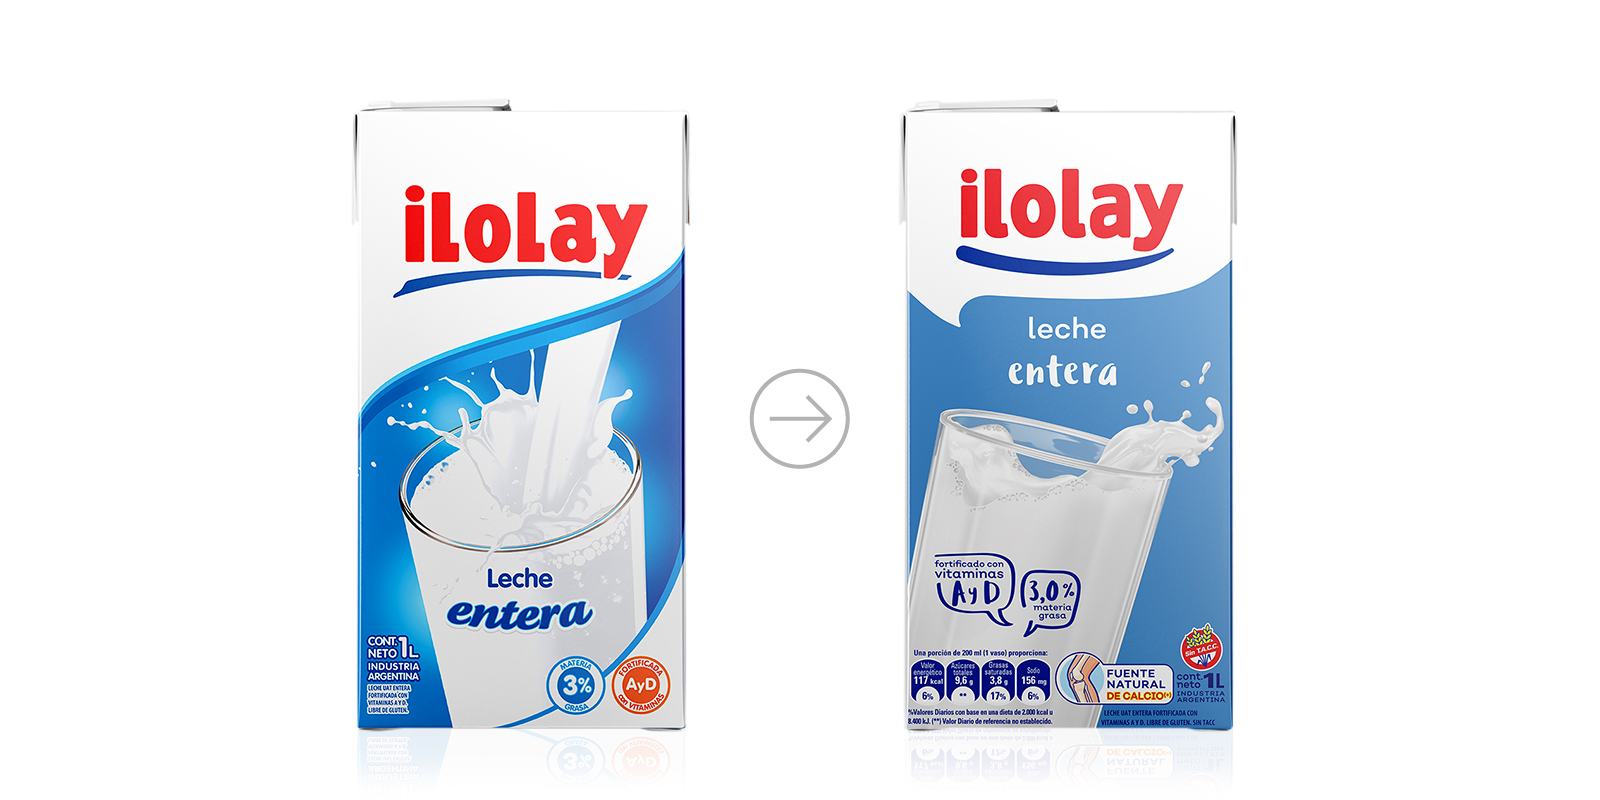 Comparación del antes y después diseño de la caja tetrabrik de leche entera Ilolay por Tridimage.